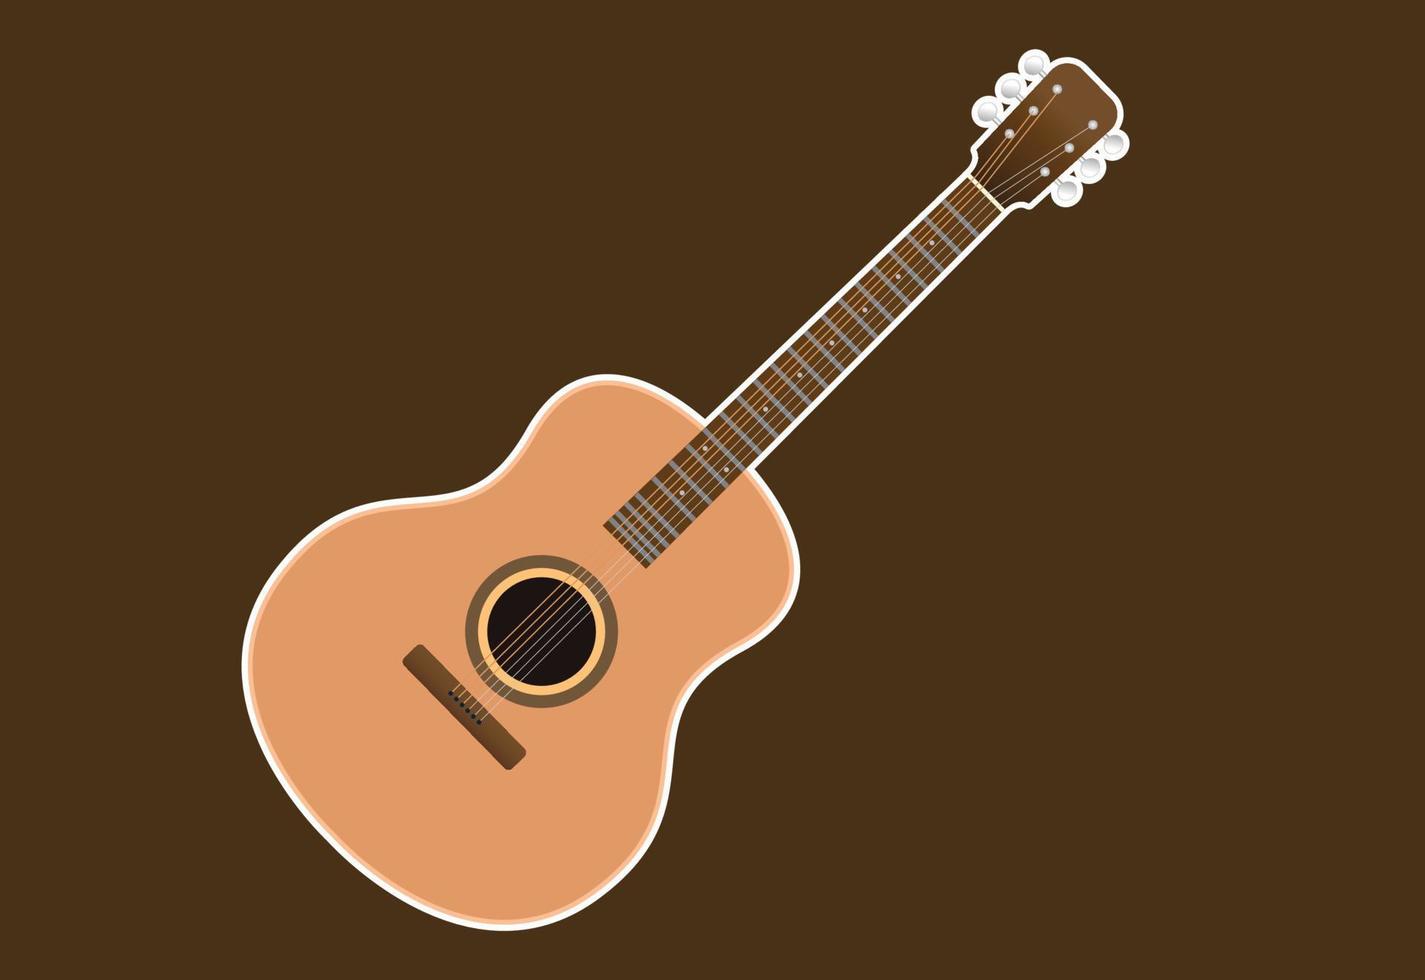 guitare acoustique, isolée sur fond blanc, utilisée pour jouer de la musique et des notes, illustration vectorielle. vecteur